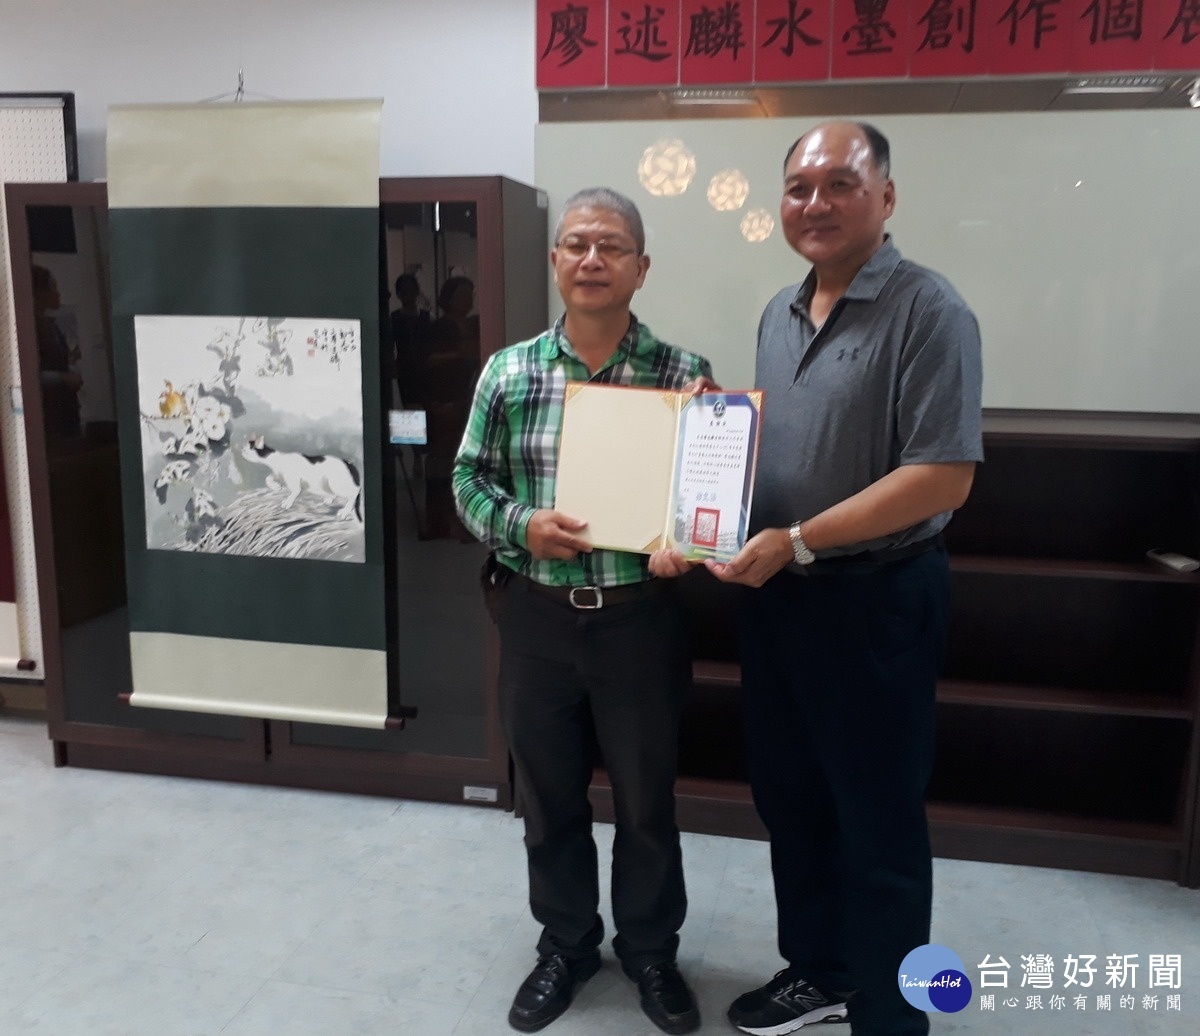 水商徐文法〈右〉校長頒贈感謝狀給廖述麟理事長,感謝他的美育推廣。